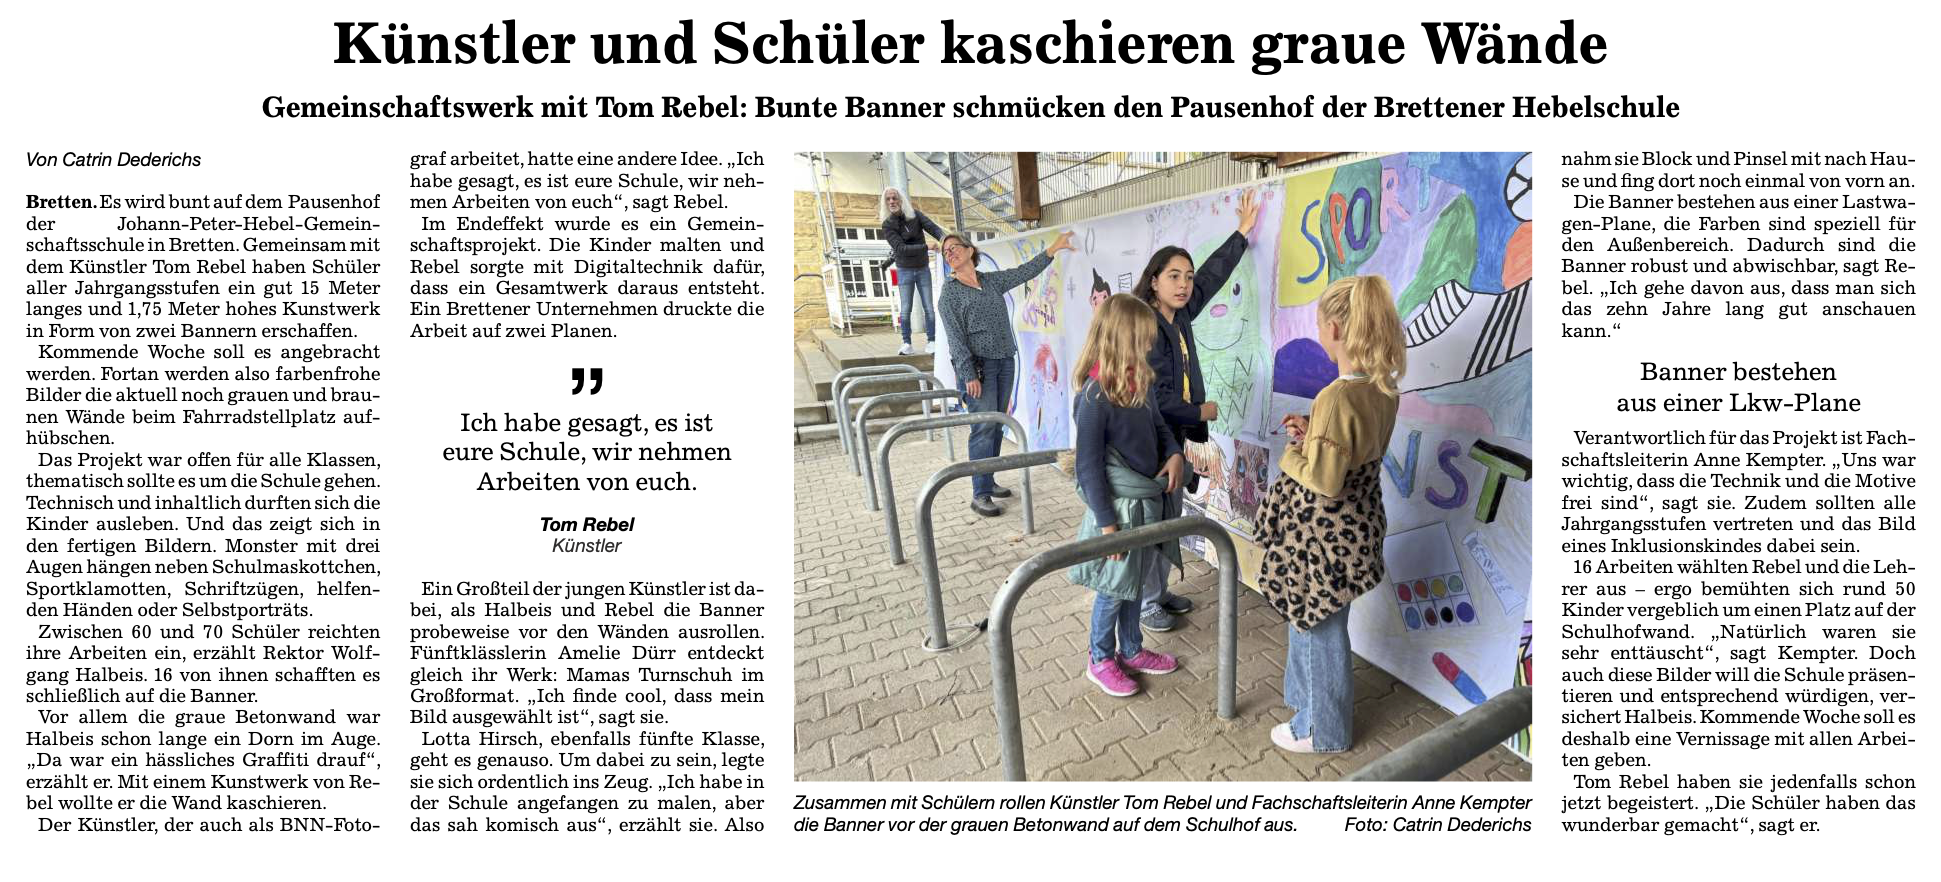 Aktuelles / Presse  Johann-Peter-Hebel Gemeinschaftsschule Bretten